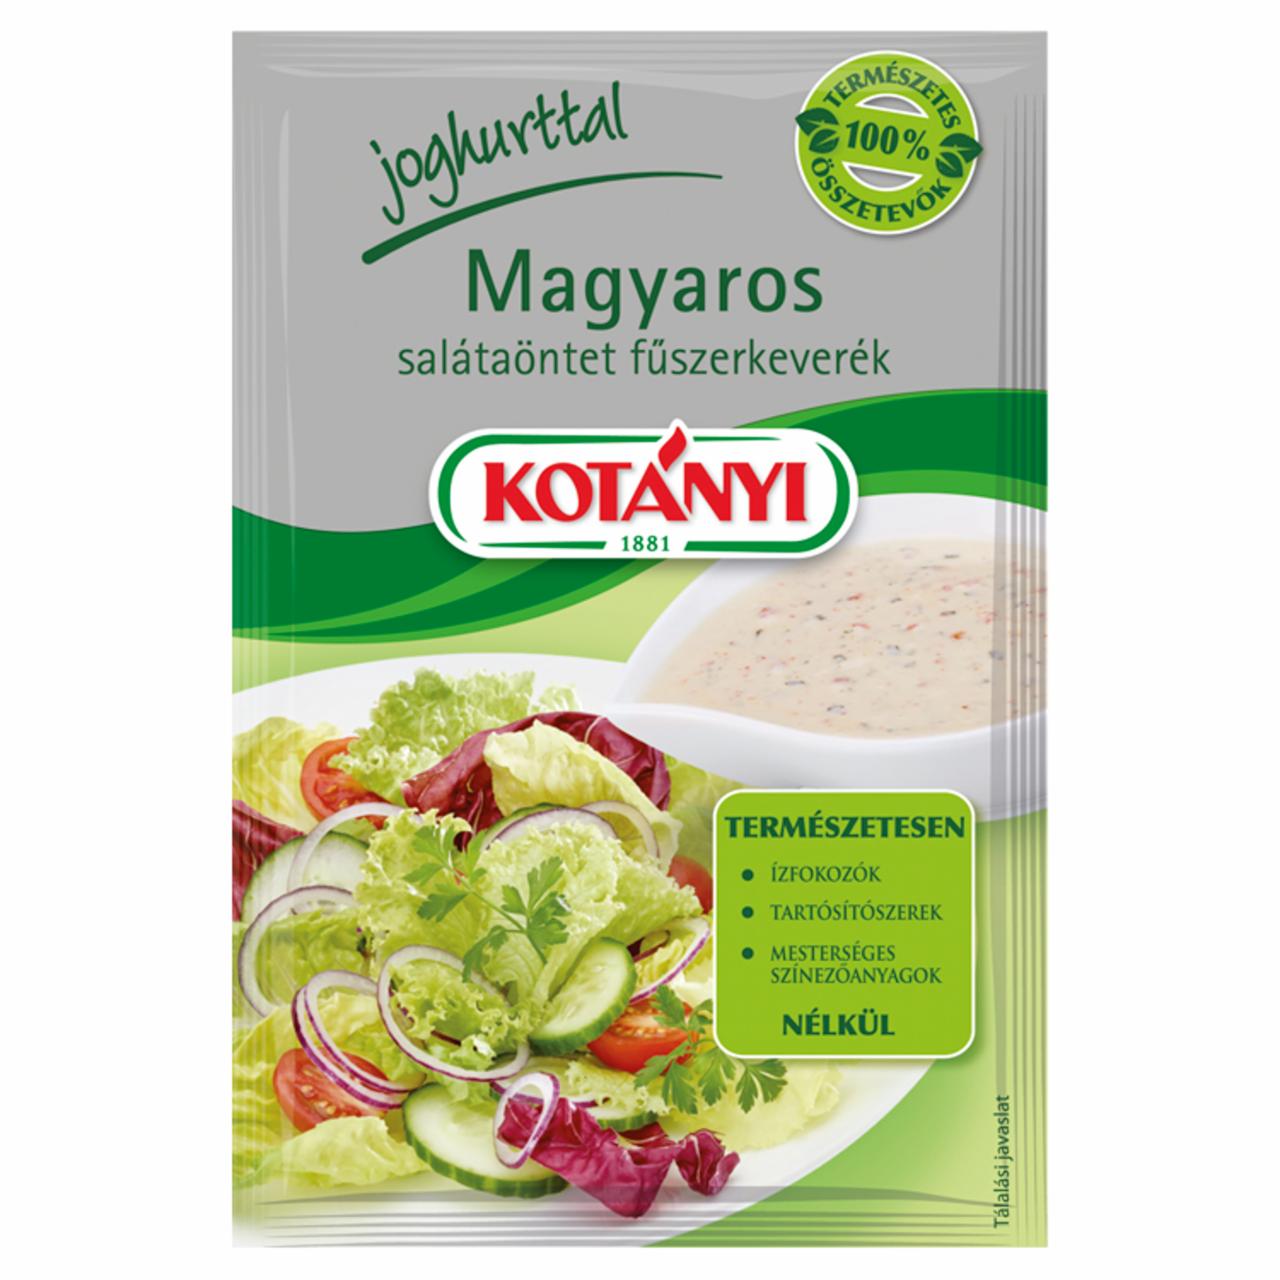 Képek - Kotányi magyaros salátaöntet fűszerkeverék 13 g